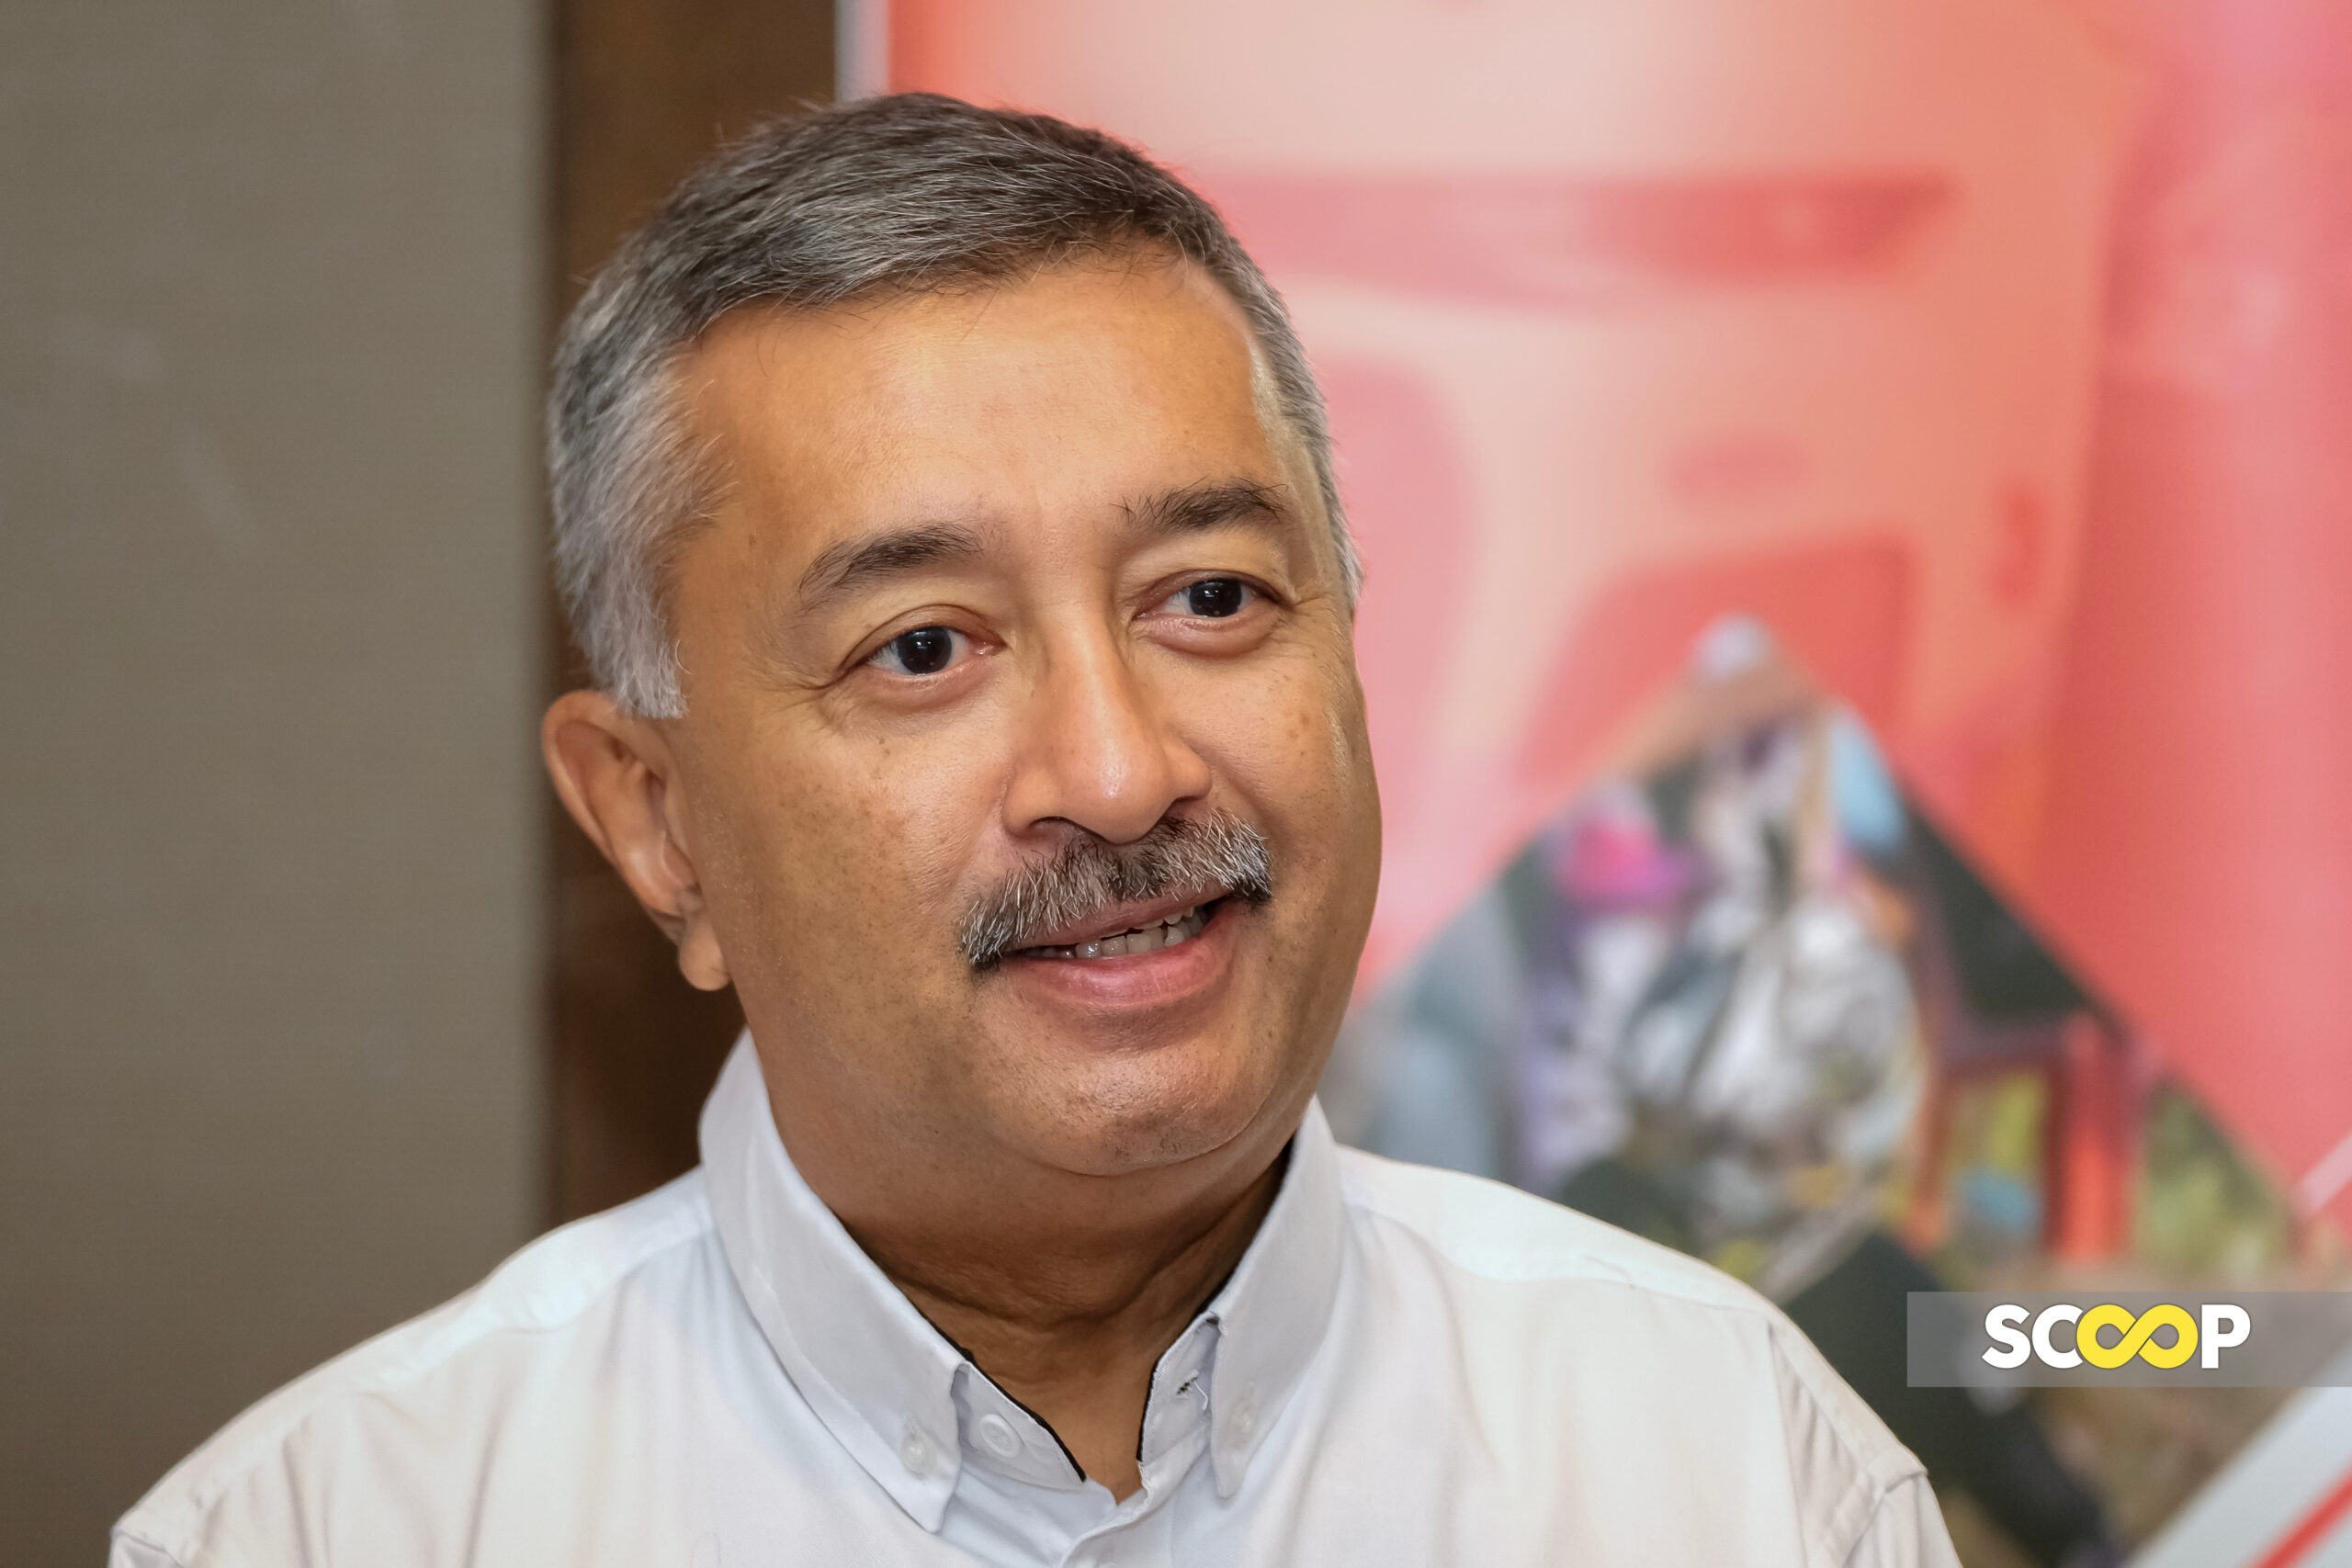 SPRM benarkan permohonan Mokhzani Mahathir lanjutkan tempoh isytihar harta sehingga 25 April ini